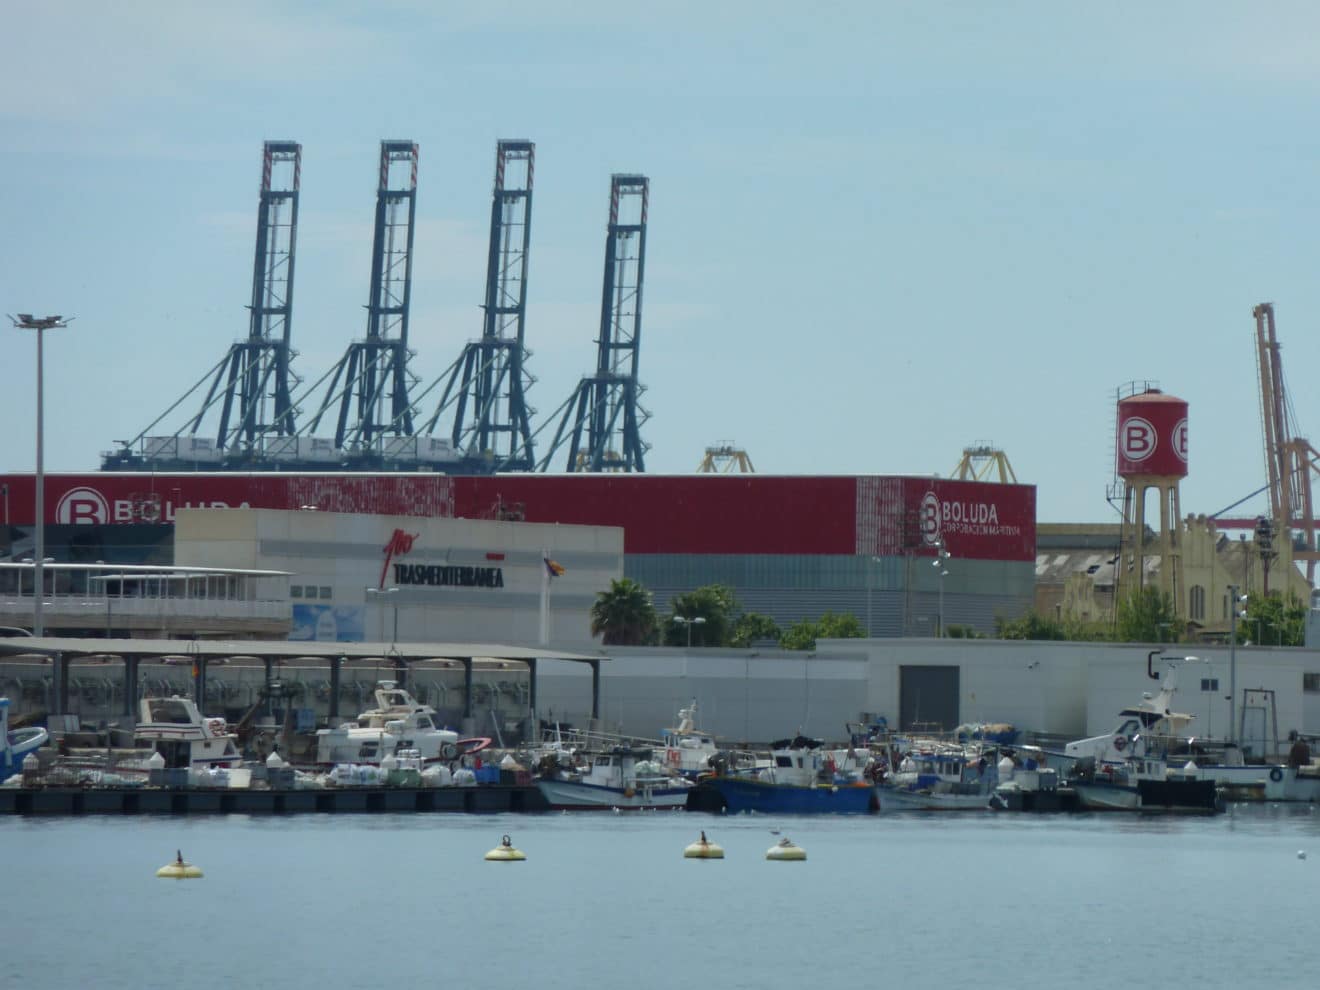 Trieste Port Sees Positive Cargo Figures In October